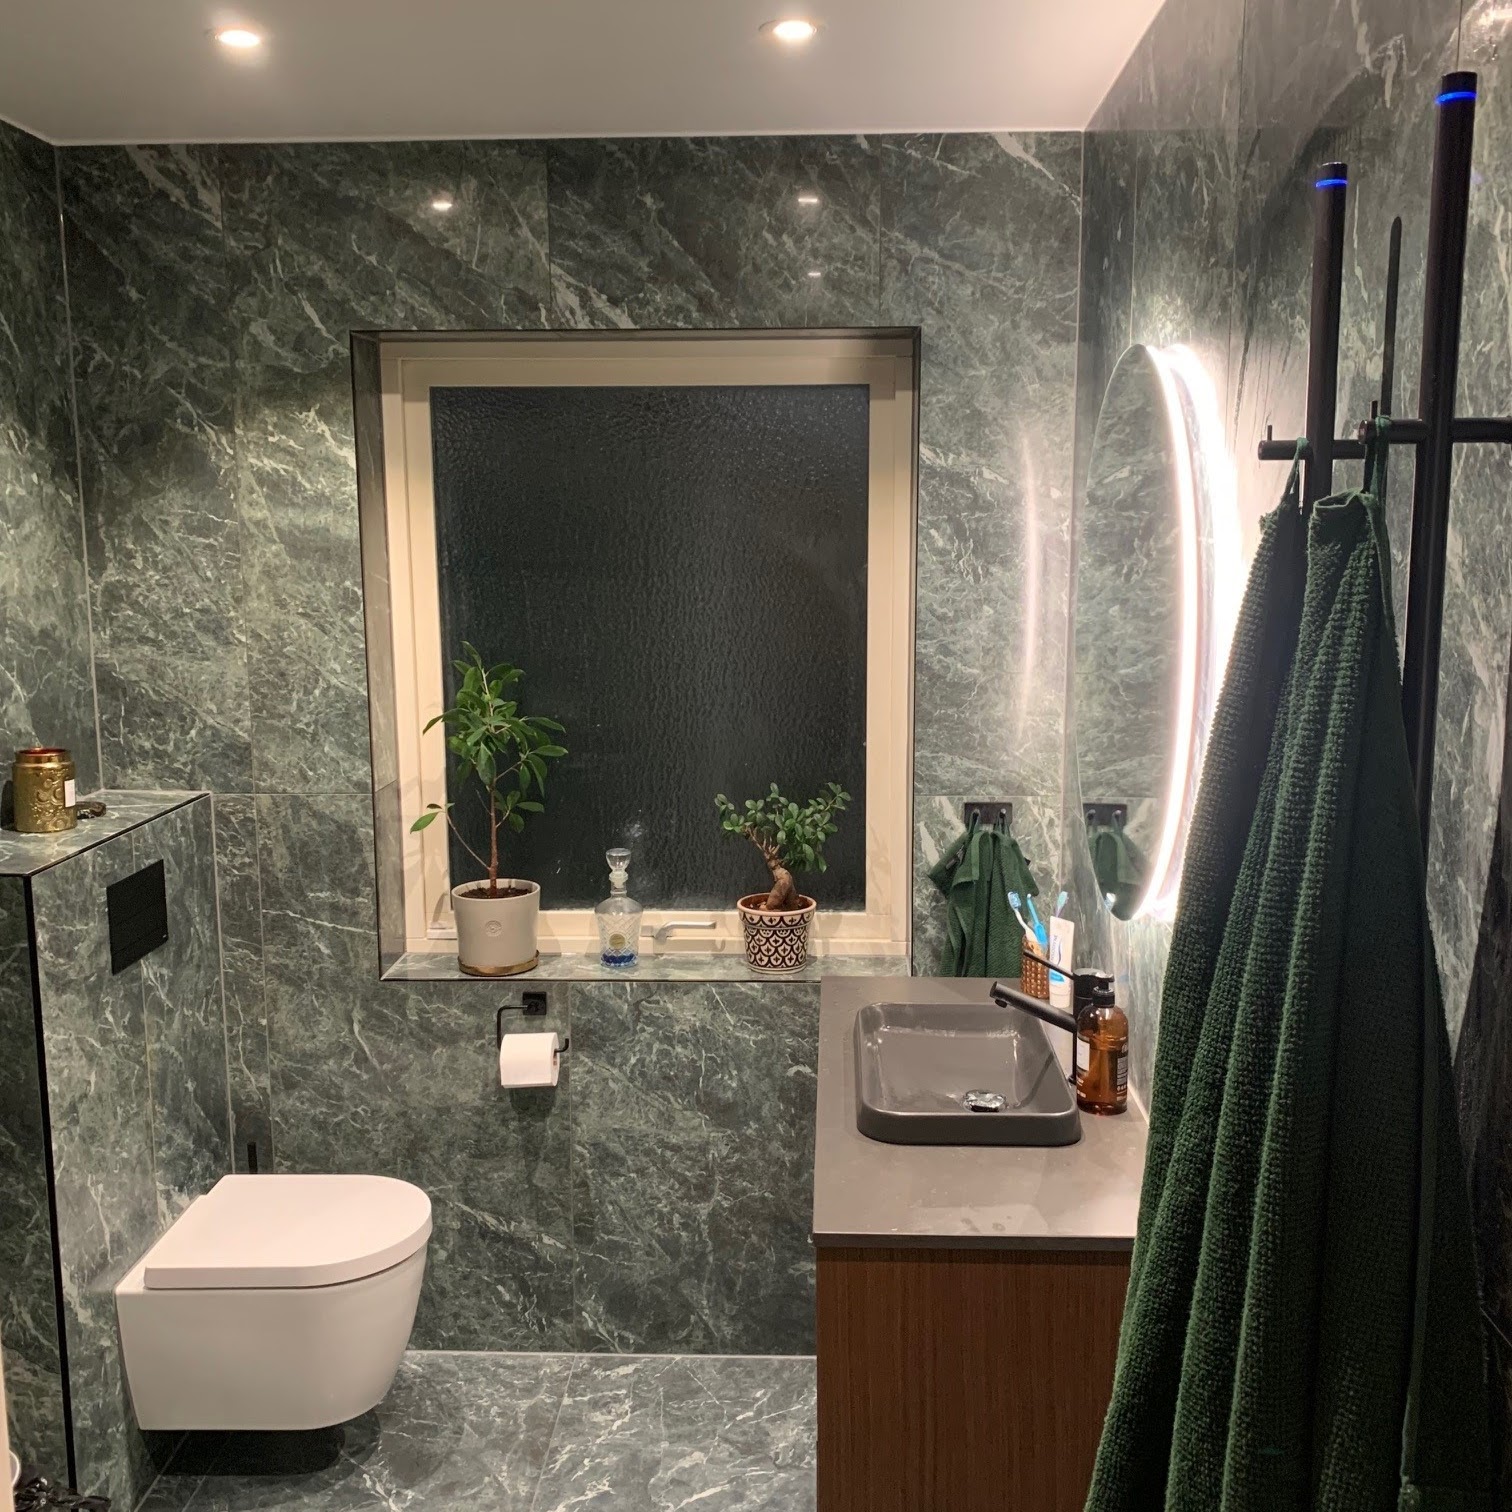 Modernt badrum klätt i mörkt marmormönstrat kakel med ett fönster, ett upphängt toalett, och en elegans handfatsektion.